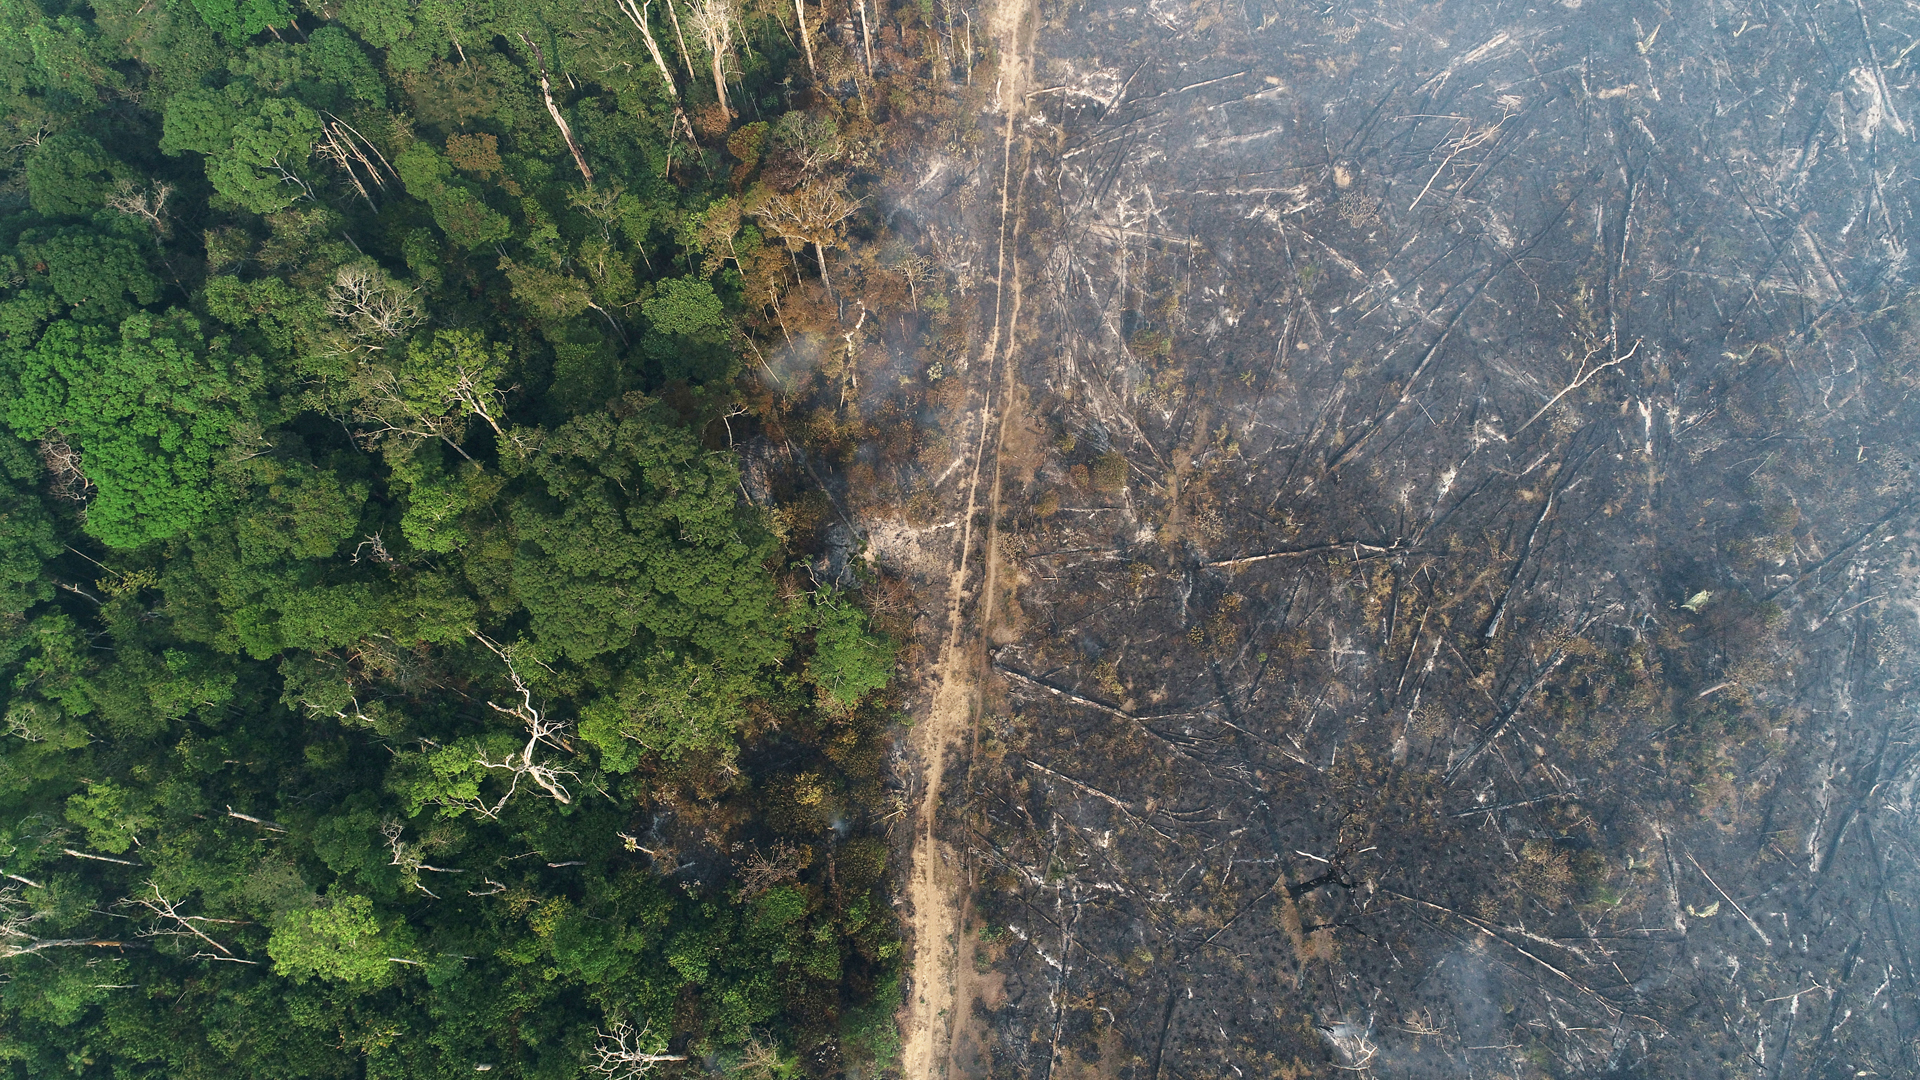 Teil des Amazonas-Dschungels, der bei der Abholzung durch Holzfäller und Landwirte brennt. | REUTERS